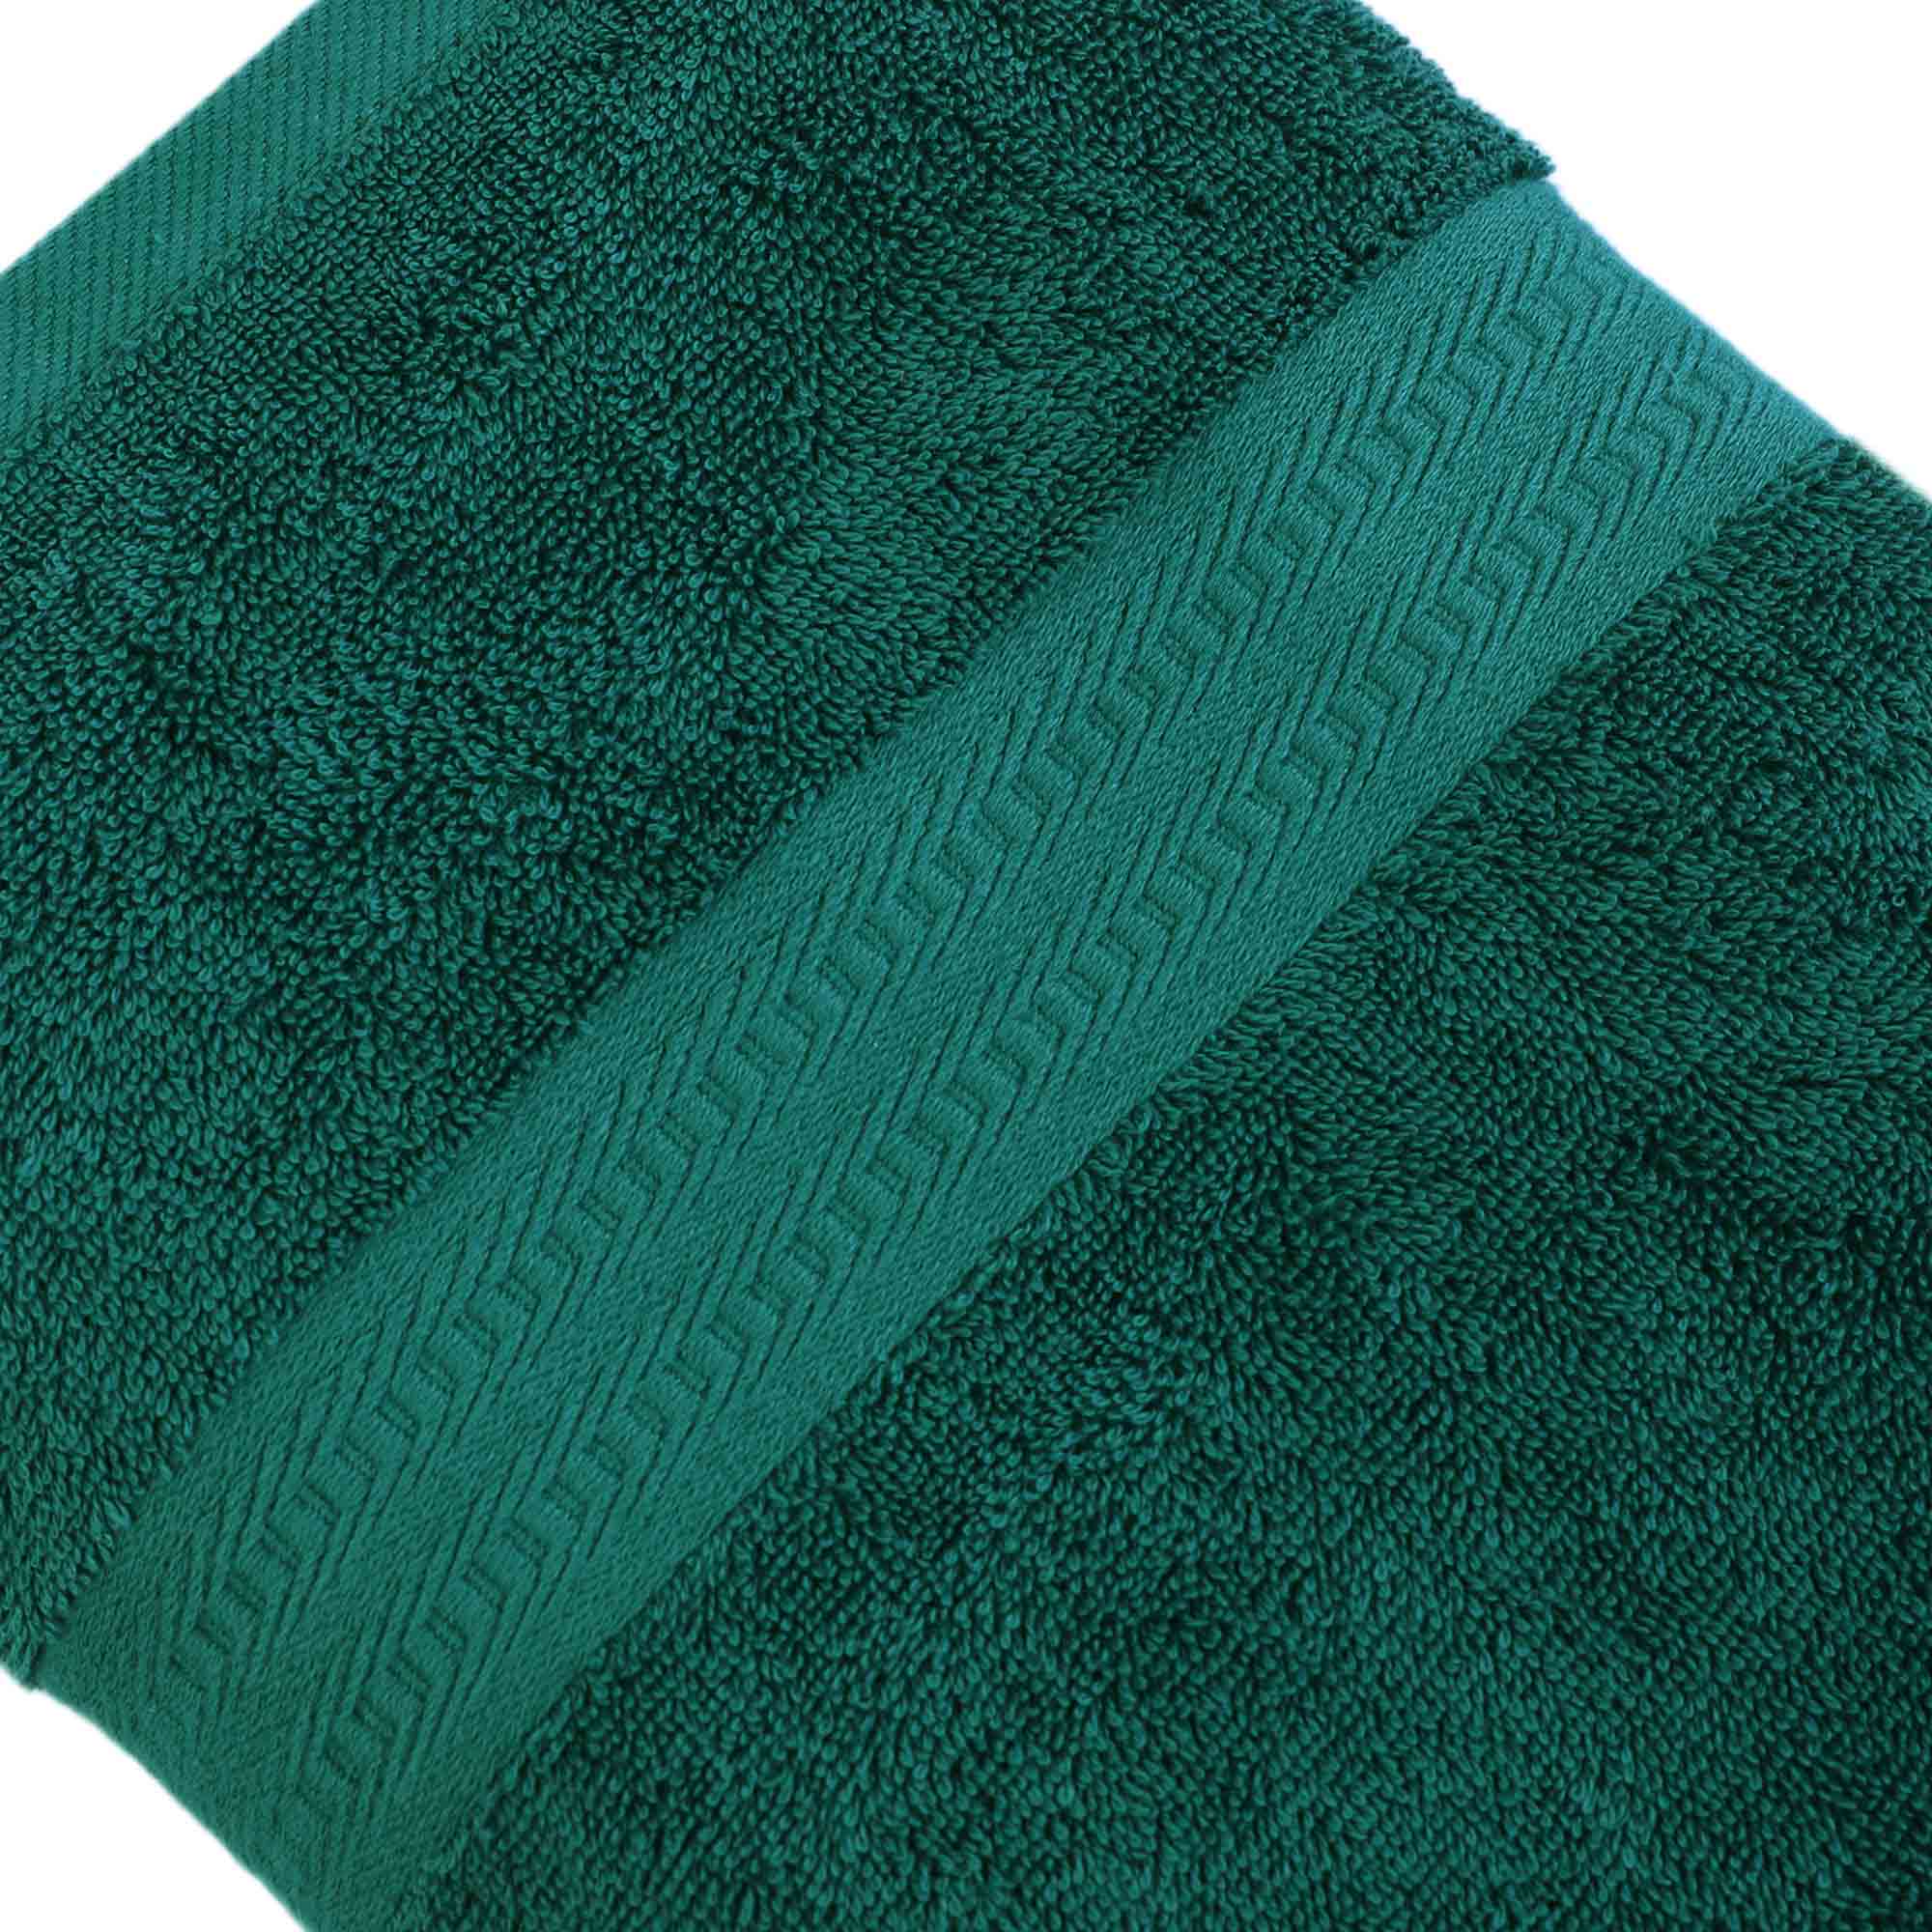 Eclat - 3 Piece Towel Set